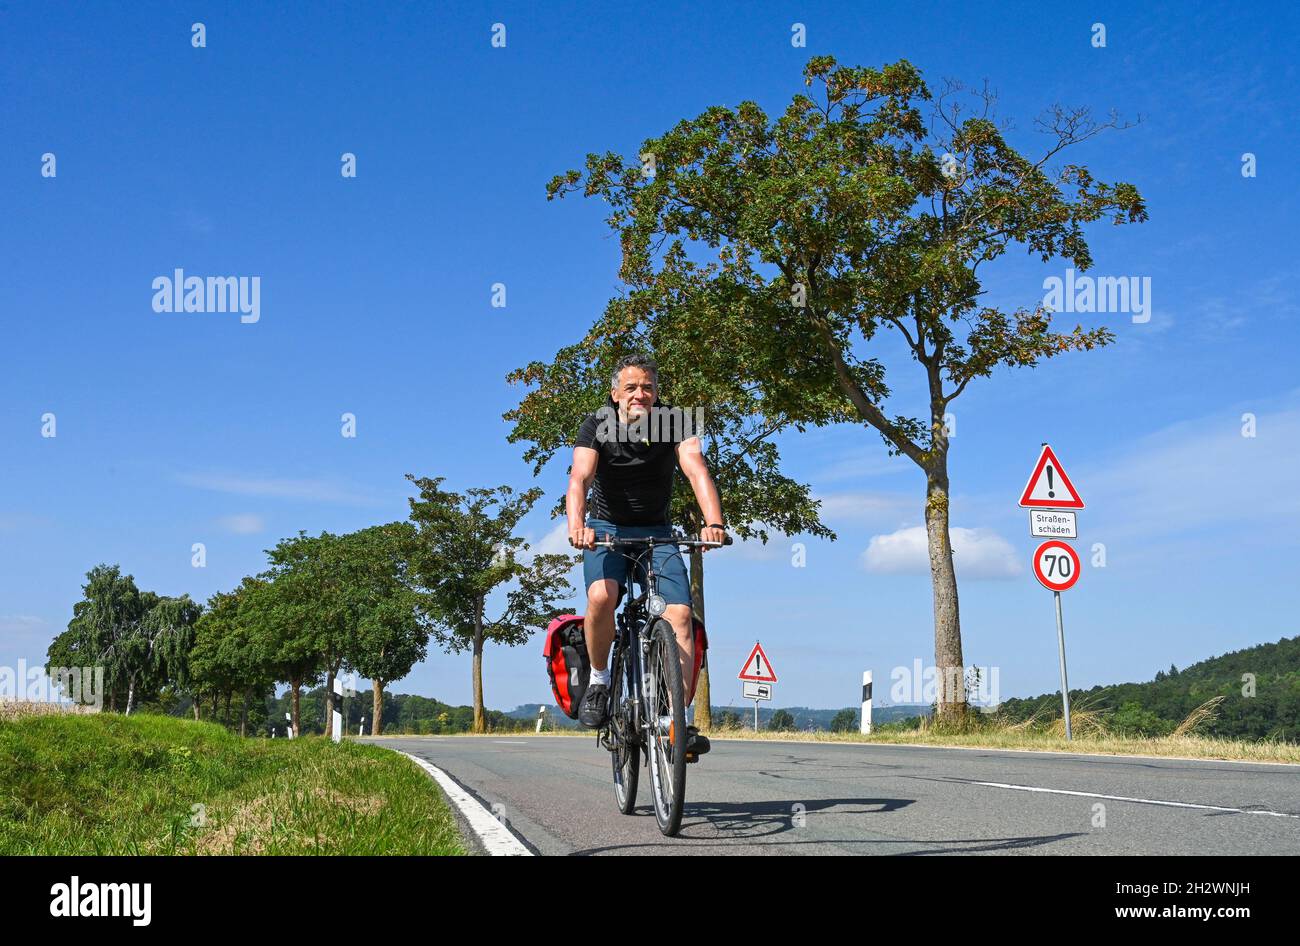 Radfahrer, Landstraße nahe Bad Pyrmont, Weserbergland, Niedersachsen, Allemagne Banque D'Images